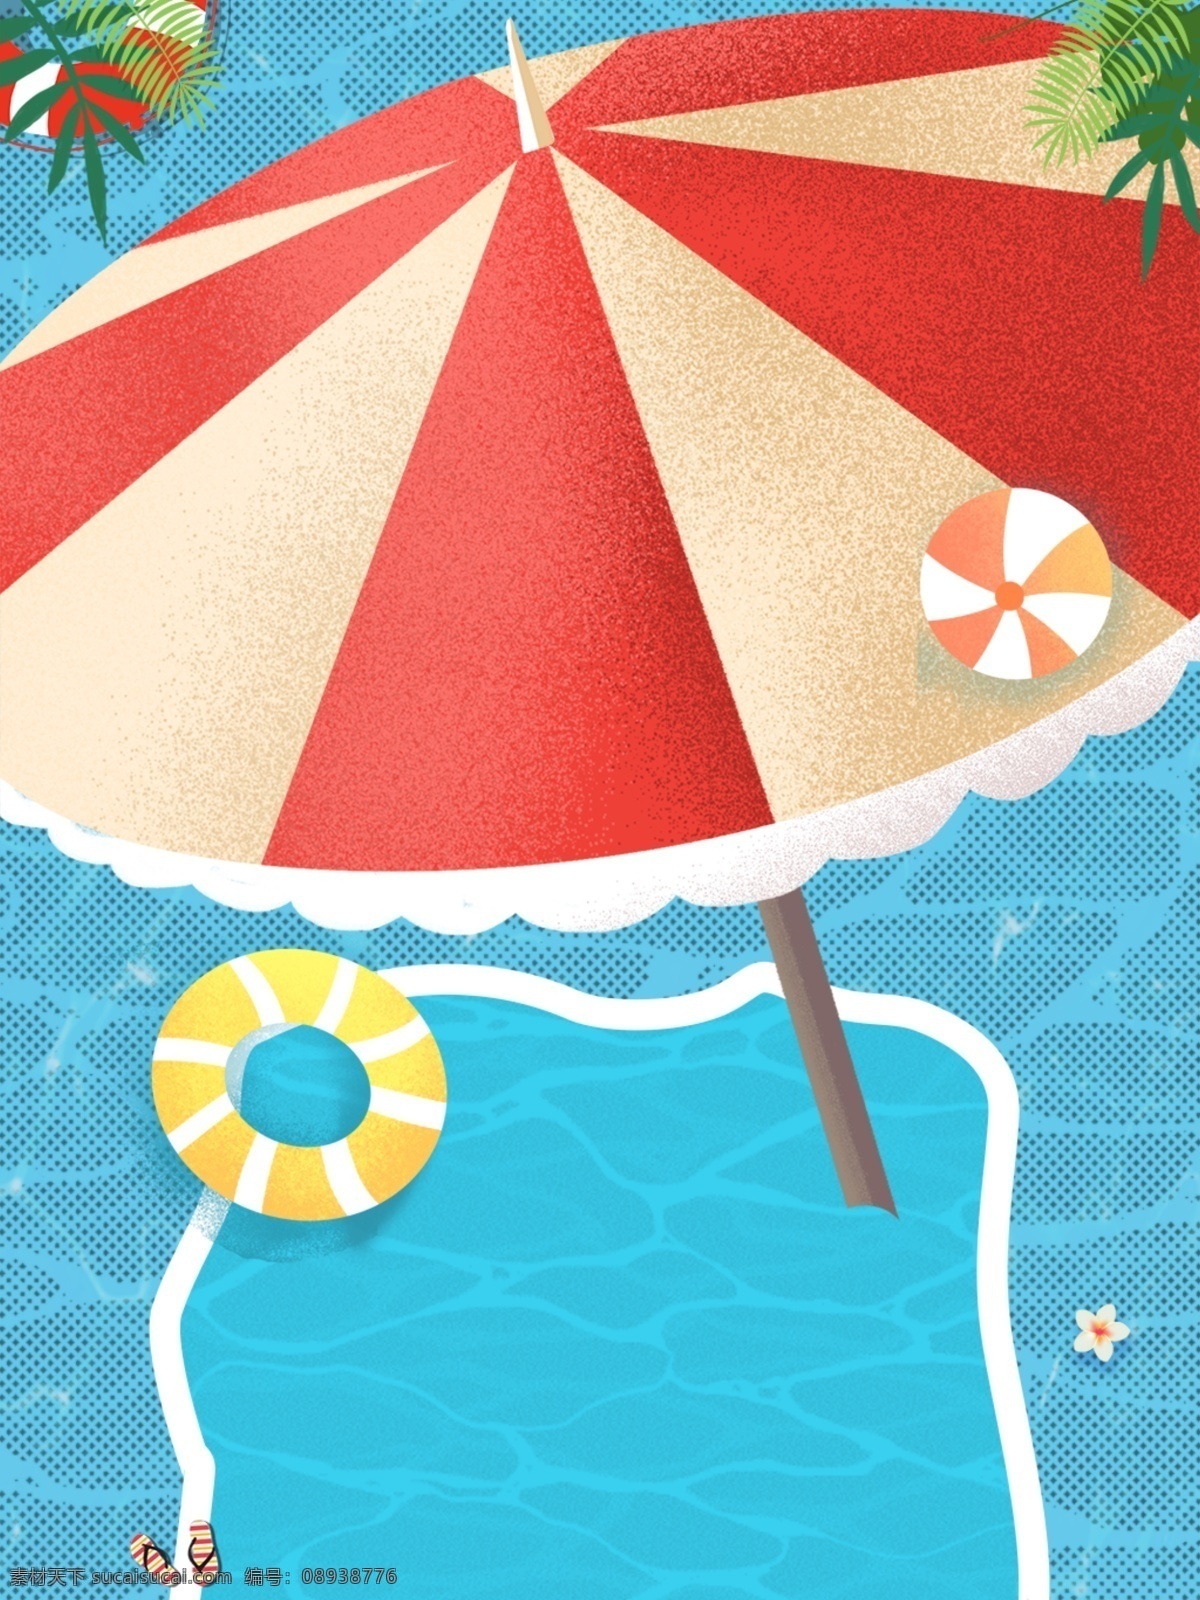 天猫 夏季 游泳 节 背景 广告背景 背景素材 背景展板 彩色背景